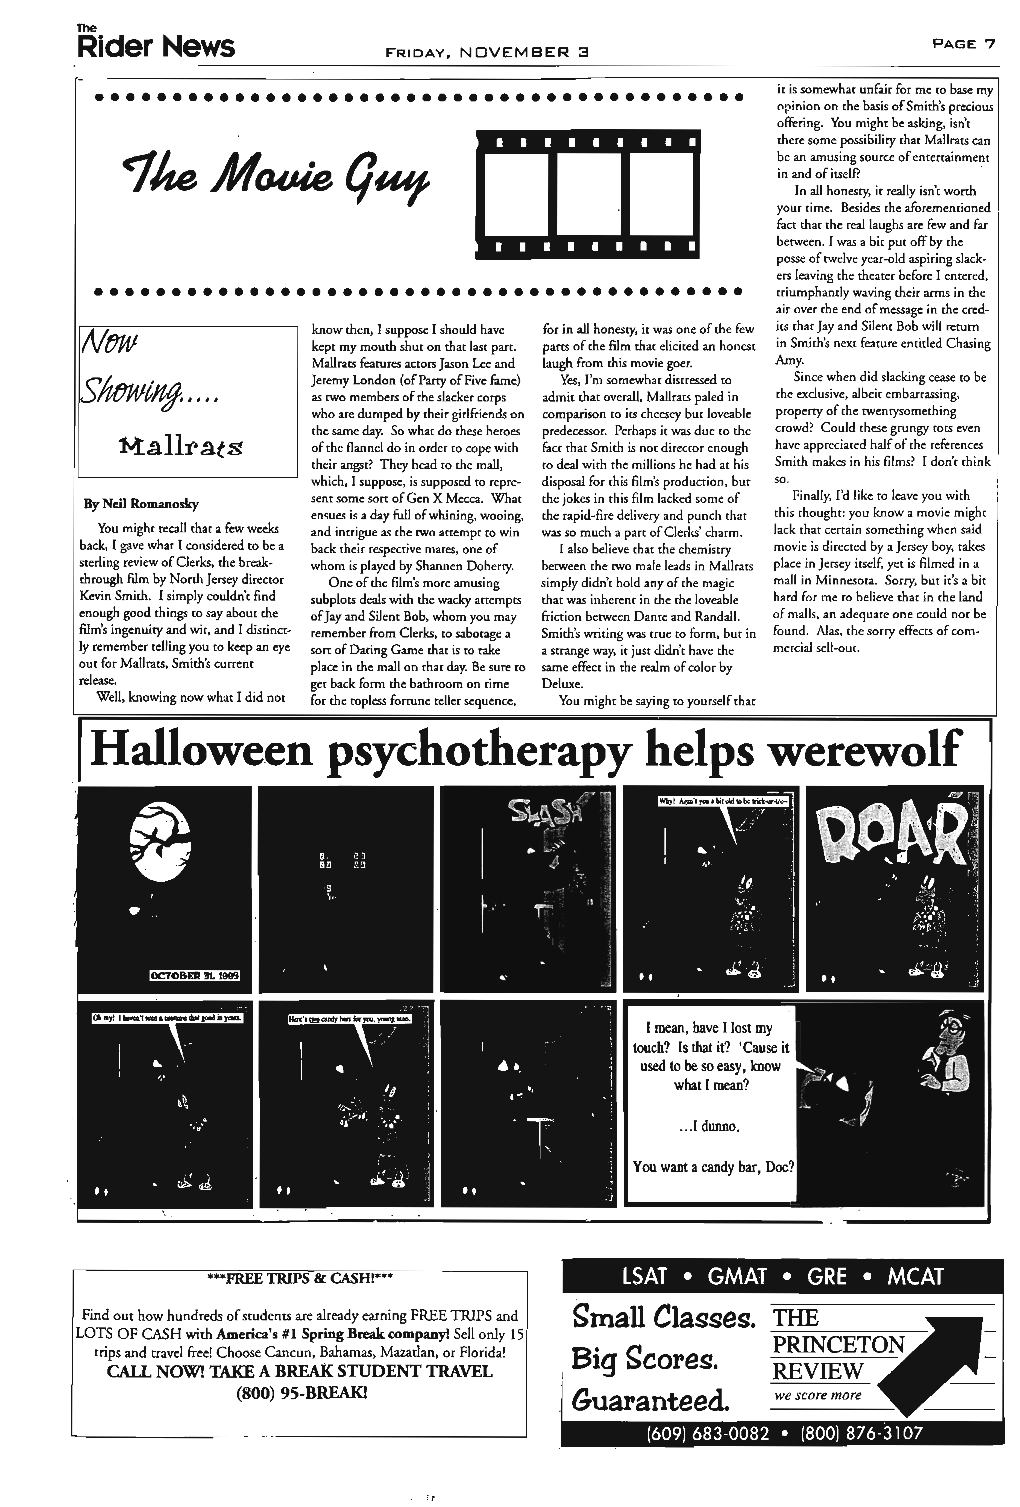 Halloween Psychotherapy Helps Werewolf